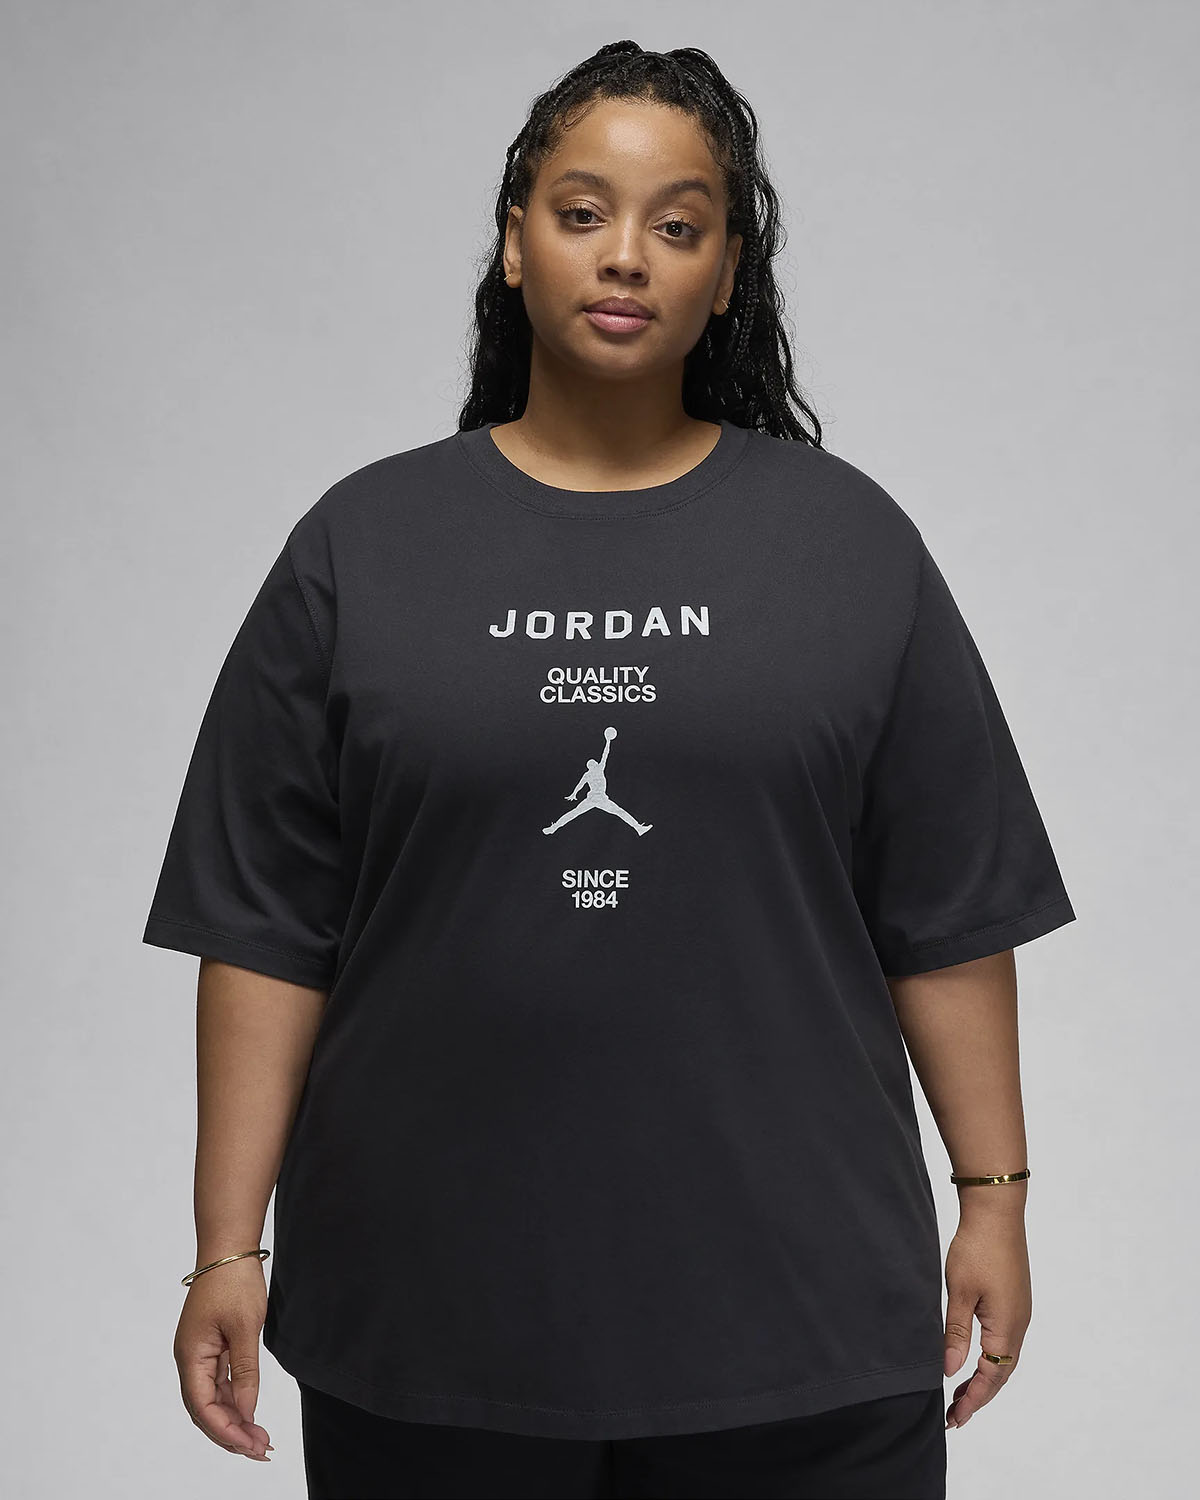 Jordan Womens Girlfriend T Shirt Plus Size Black White